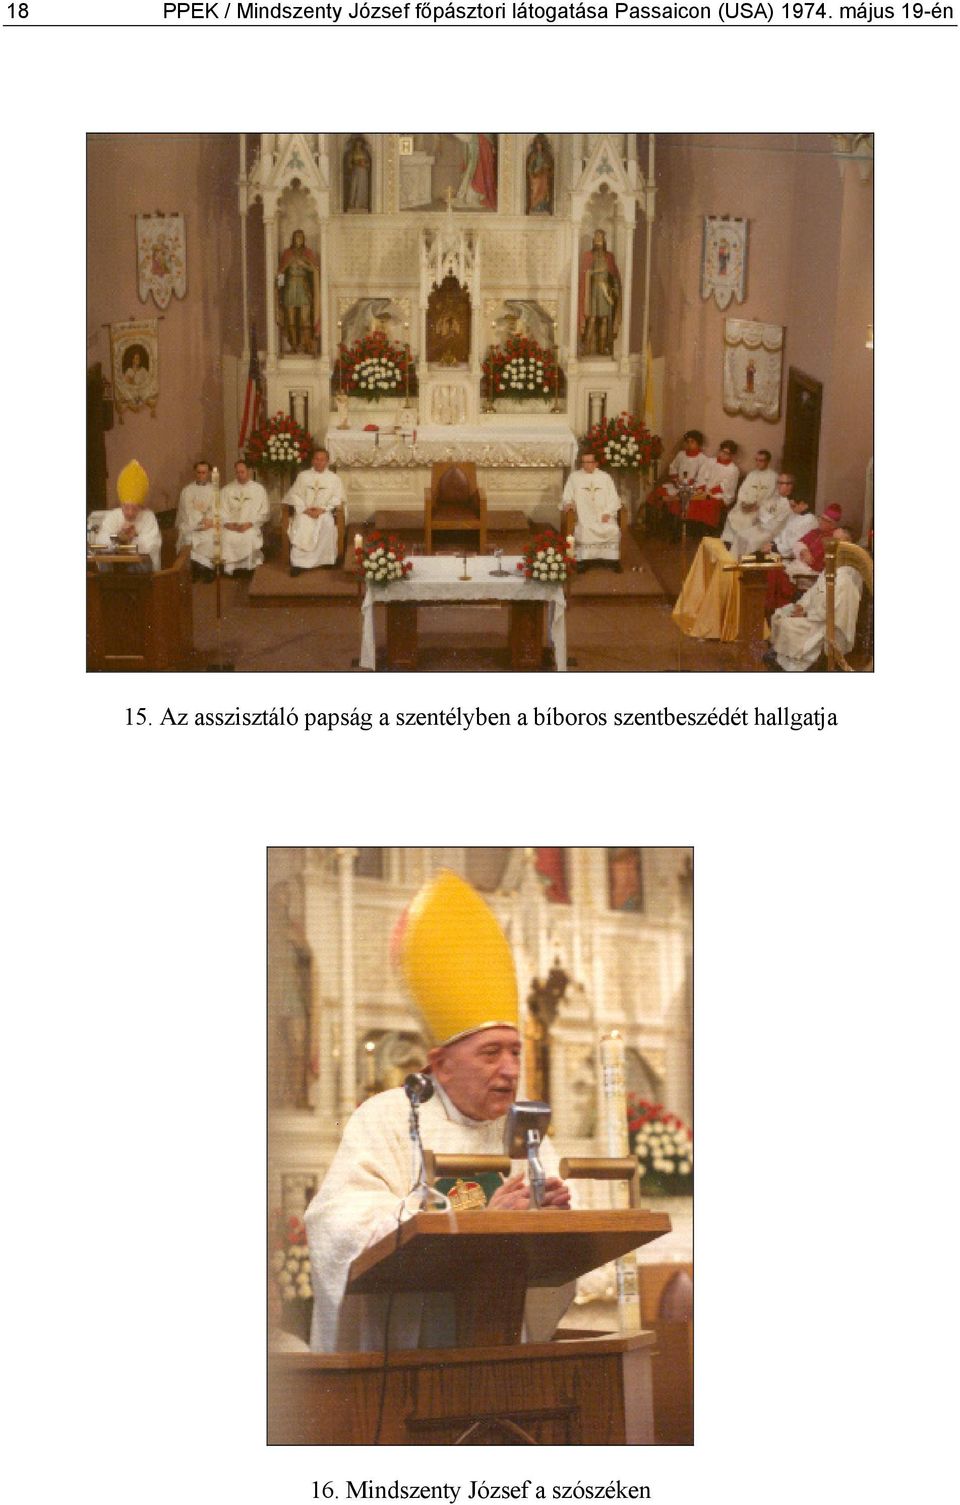 Az asszisztáló papság a szentélyben a bíboros